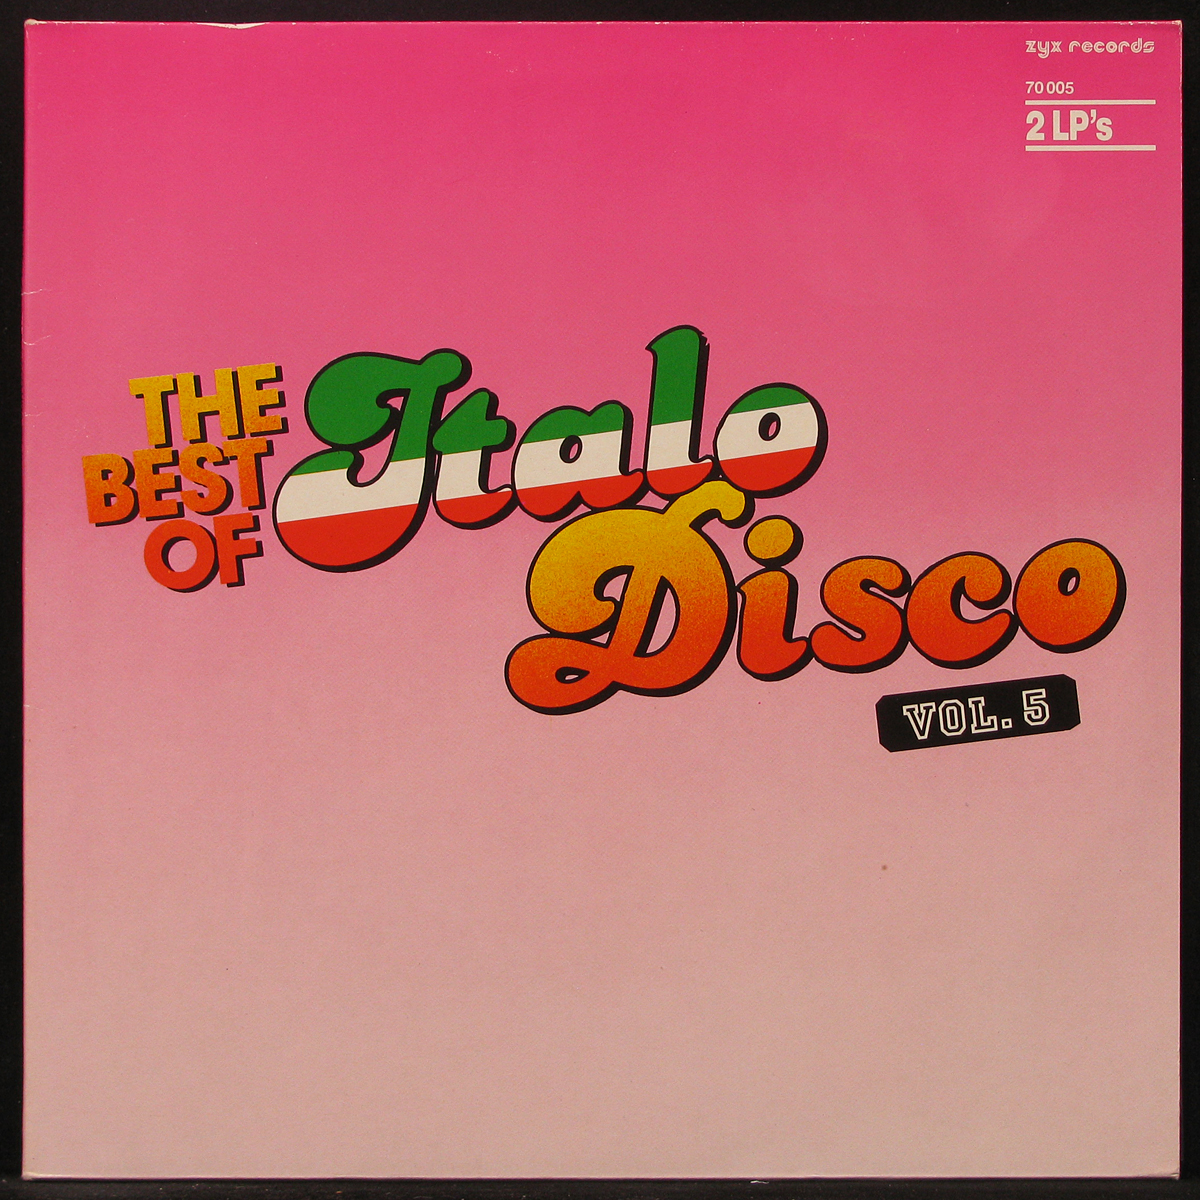 Итальянский диско слушать. The best of Italo Disco Vol.5. Italo Disco Vol 5. DVD the best of Disco 80s диск. Italo Disco Hits Vol пластинки.